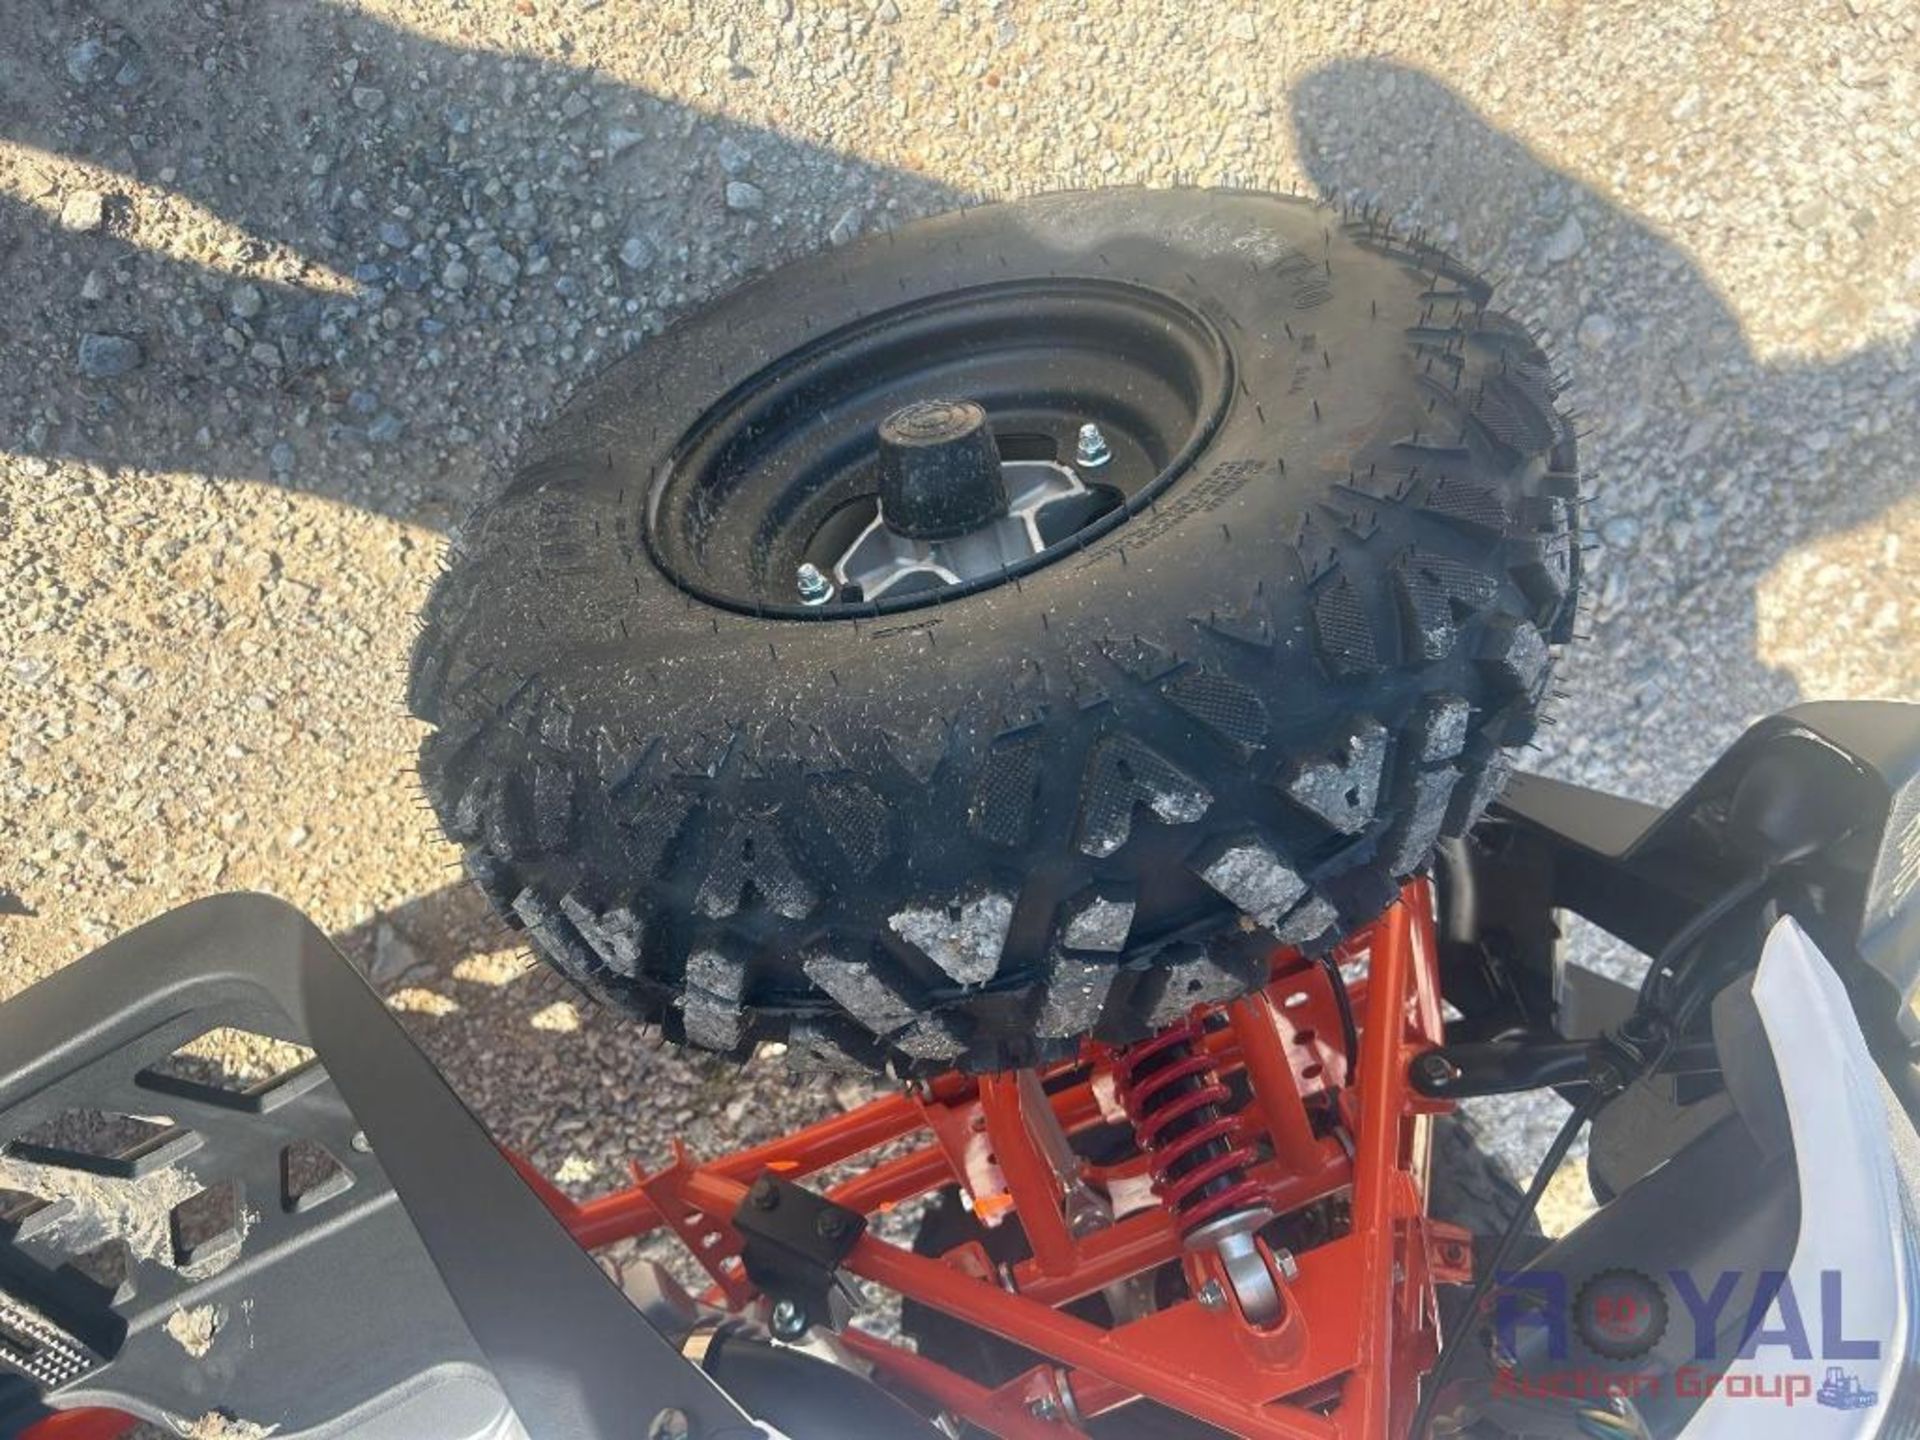 Unused Kayo Bull 200cc ATV - Image 16 of 19